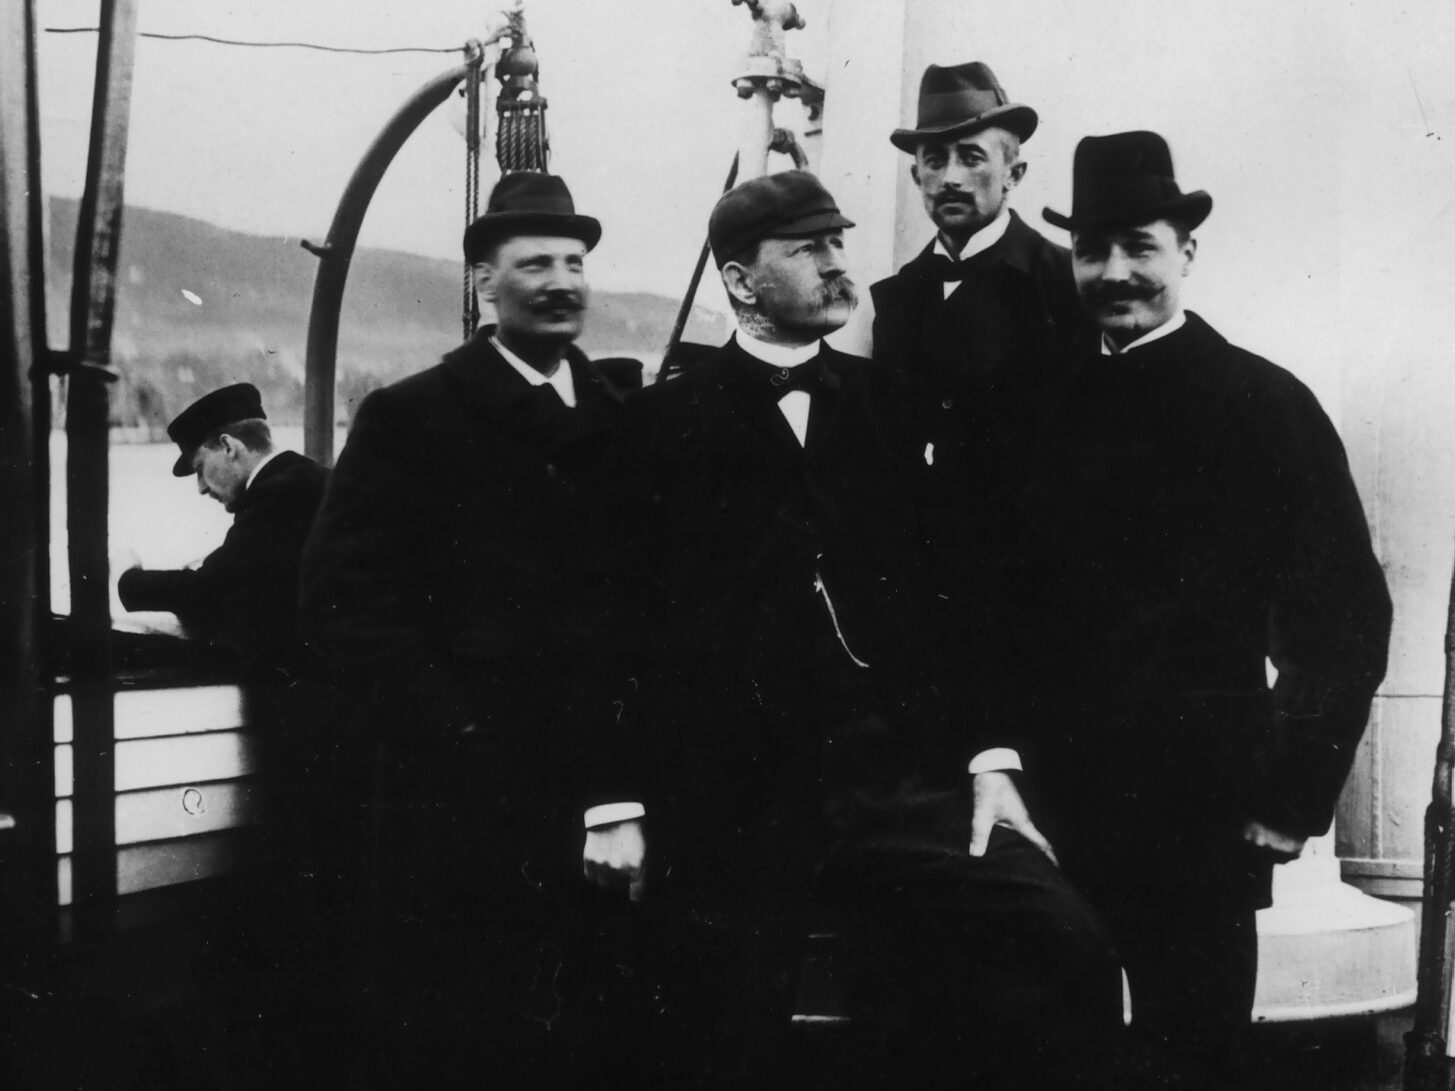 Fire menn poserer på dekket av en båt. De har mørke penklær, hatter og bart.